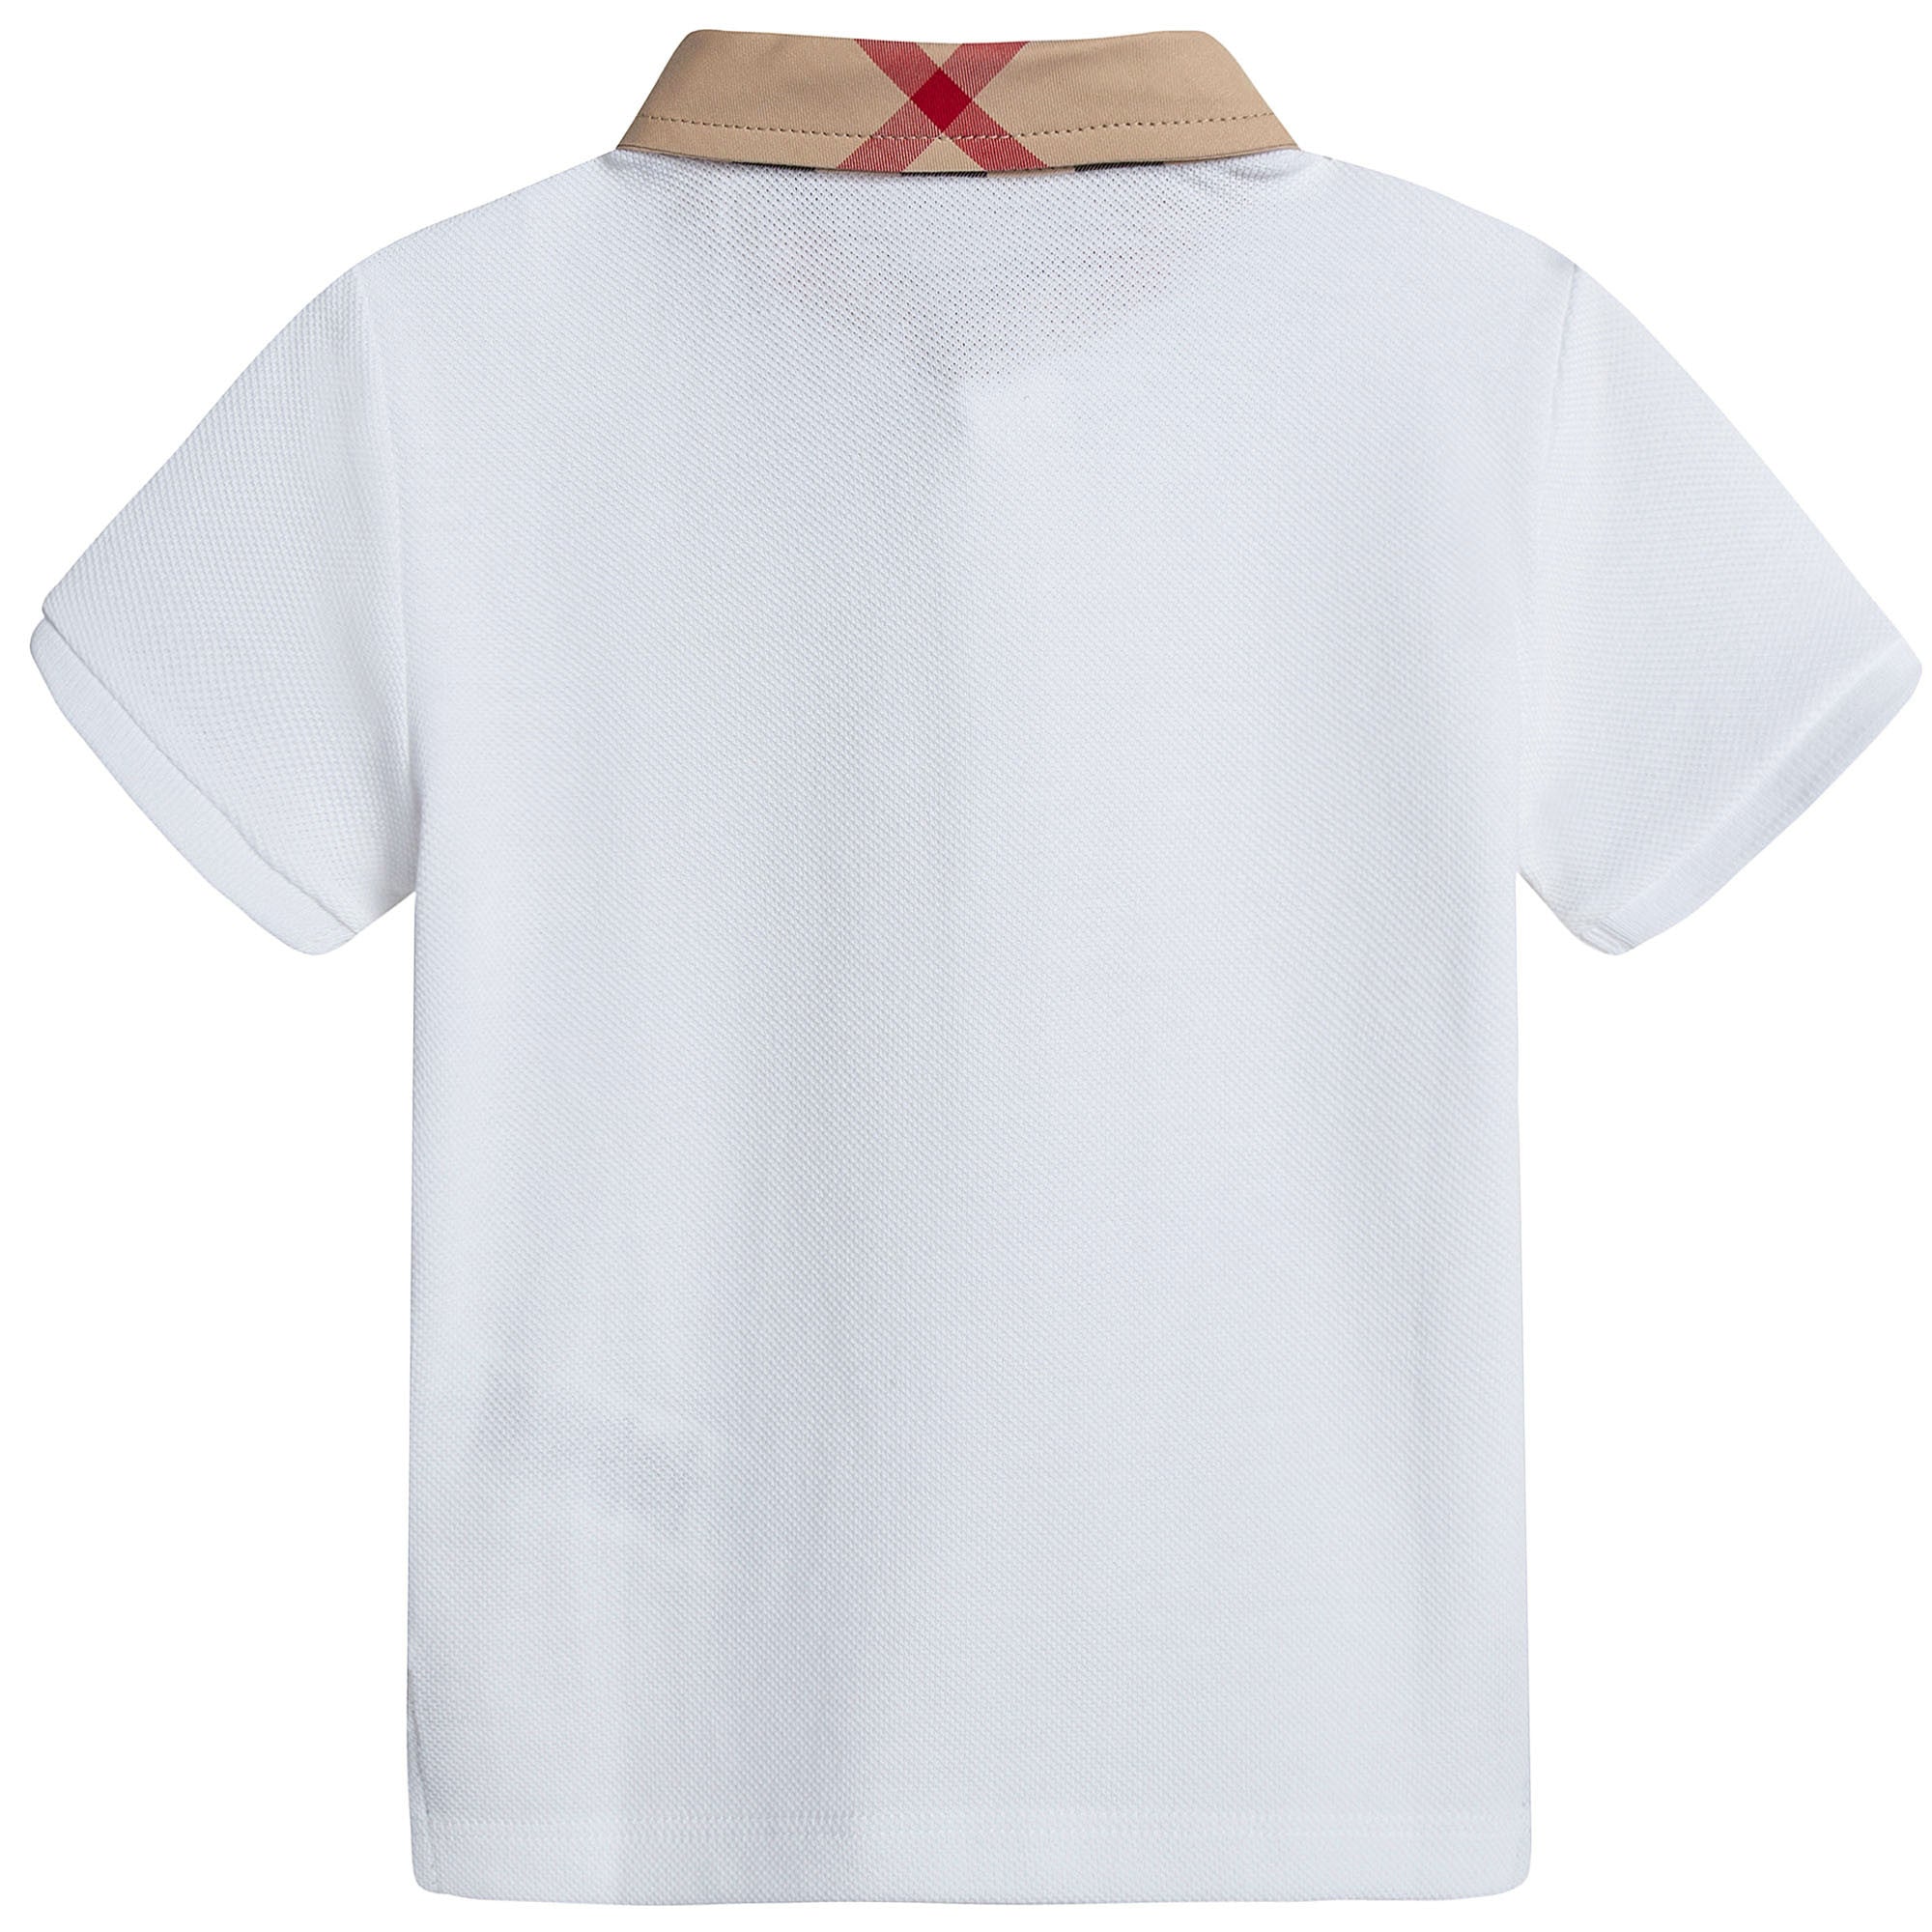 Baby Boys White Polo Shirt With Check Collar